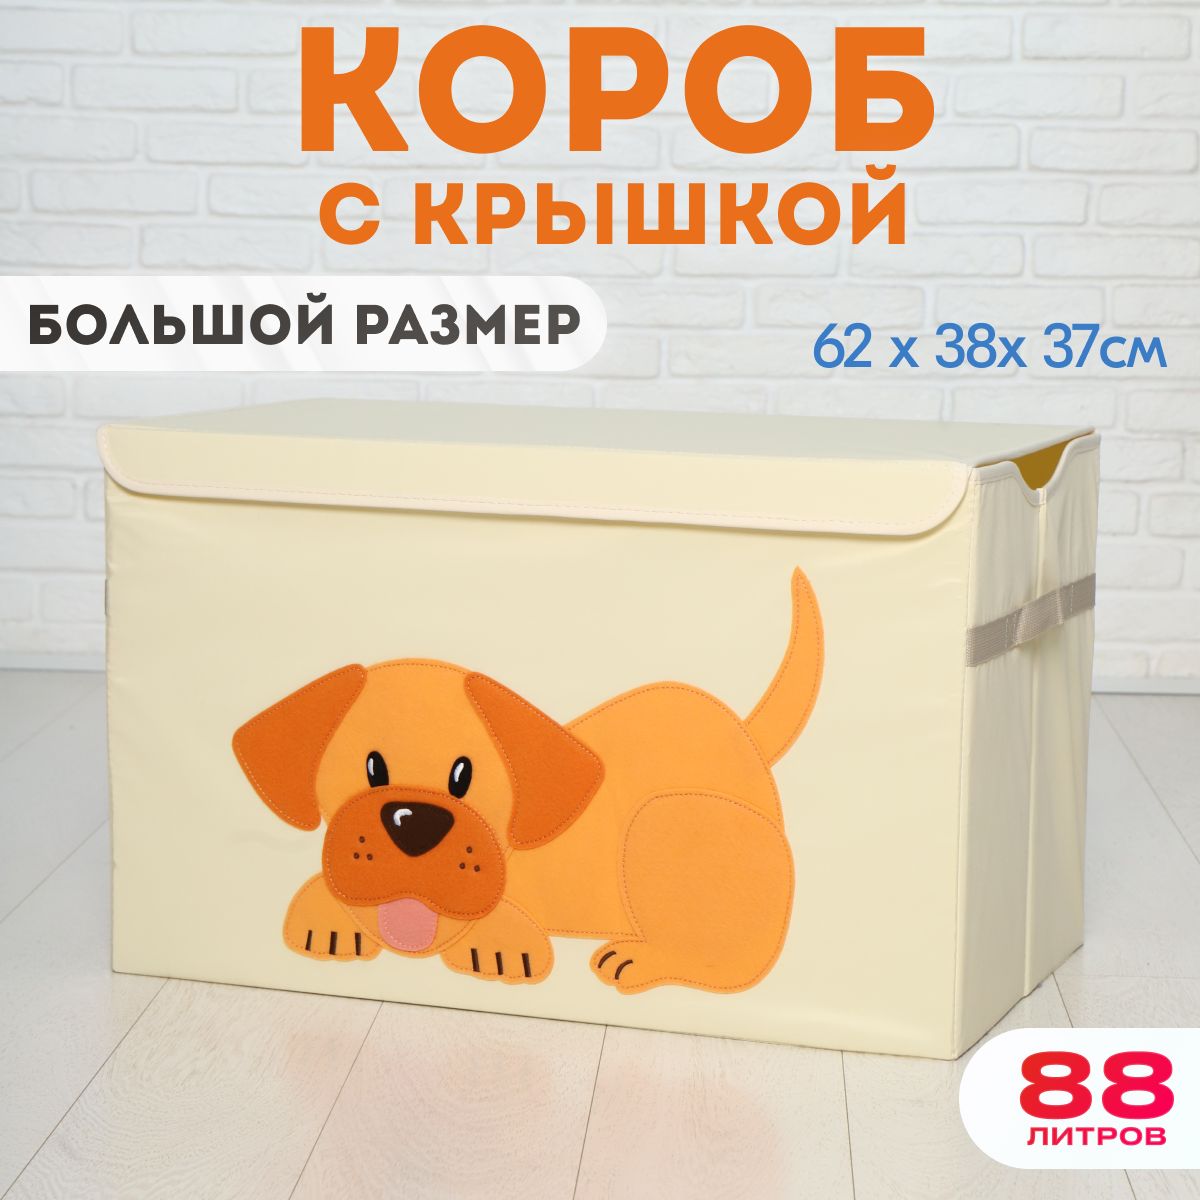 Корзина для хранения игрушек, HappySava, Собака, 88 литров